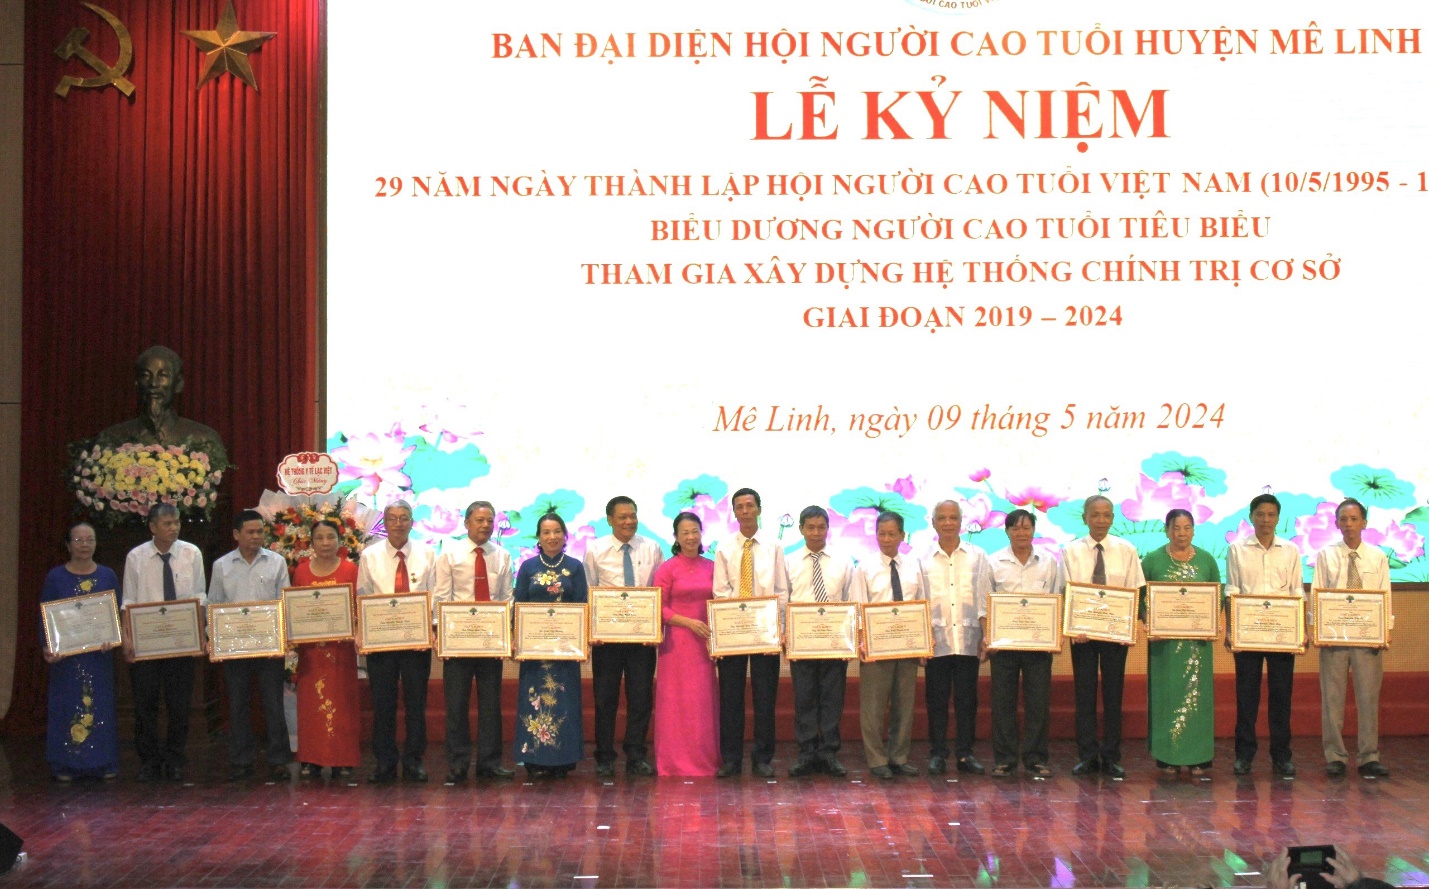 Mê Linh: Kỷ niệm 29 năm ngày thành lập Hội Người cao tuổi Việt Nam; biểu dương người cao tuổi tiêu biểu tham gia xây dựng hệ thống chính trị cơ sở giai đoạn 2019 - 2024- Ảnh 1.